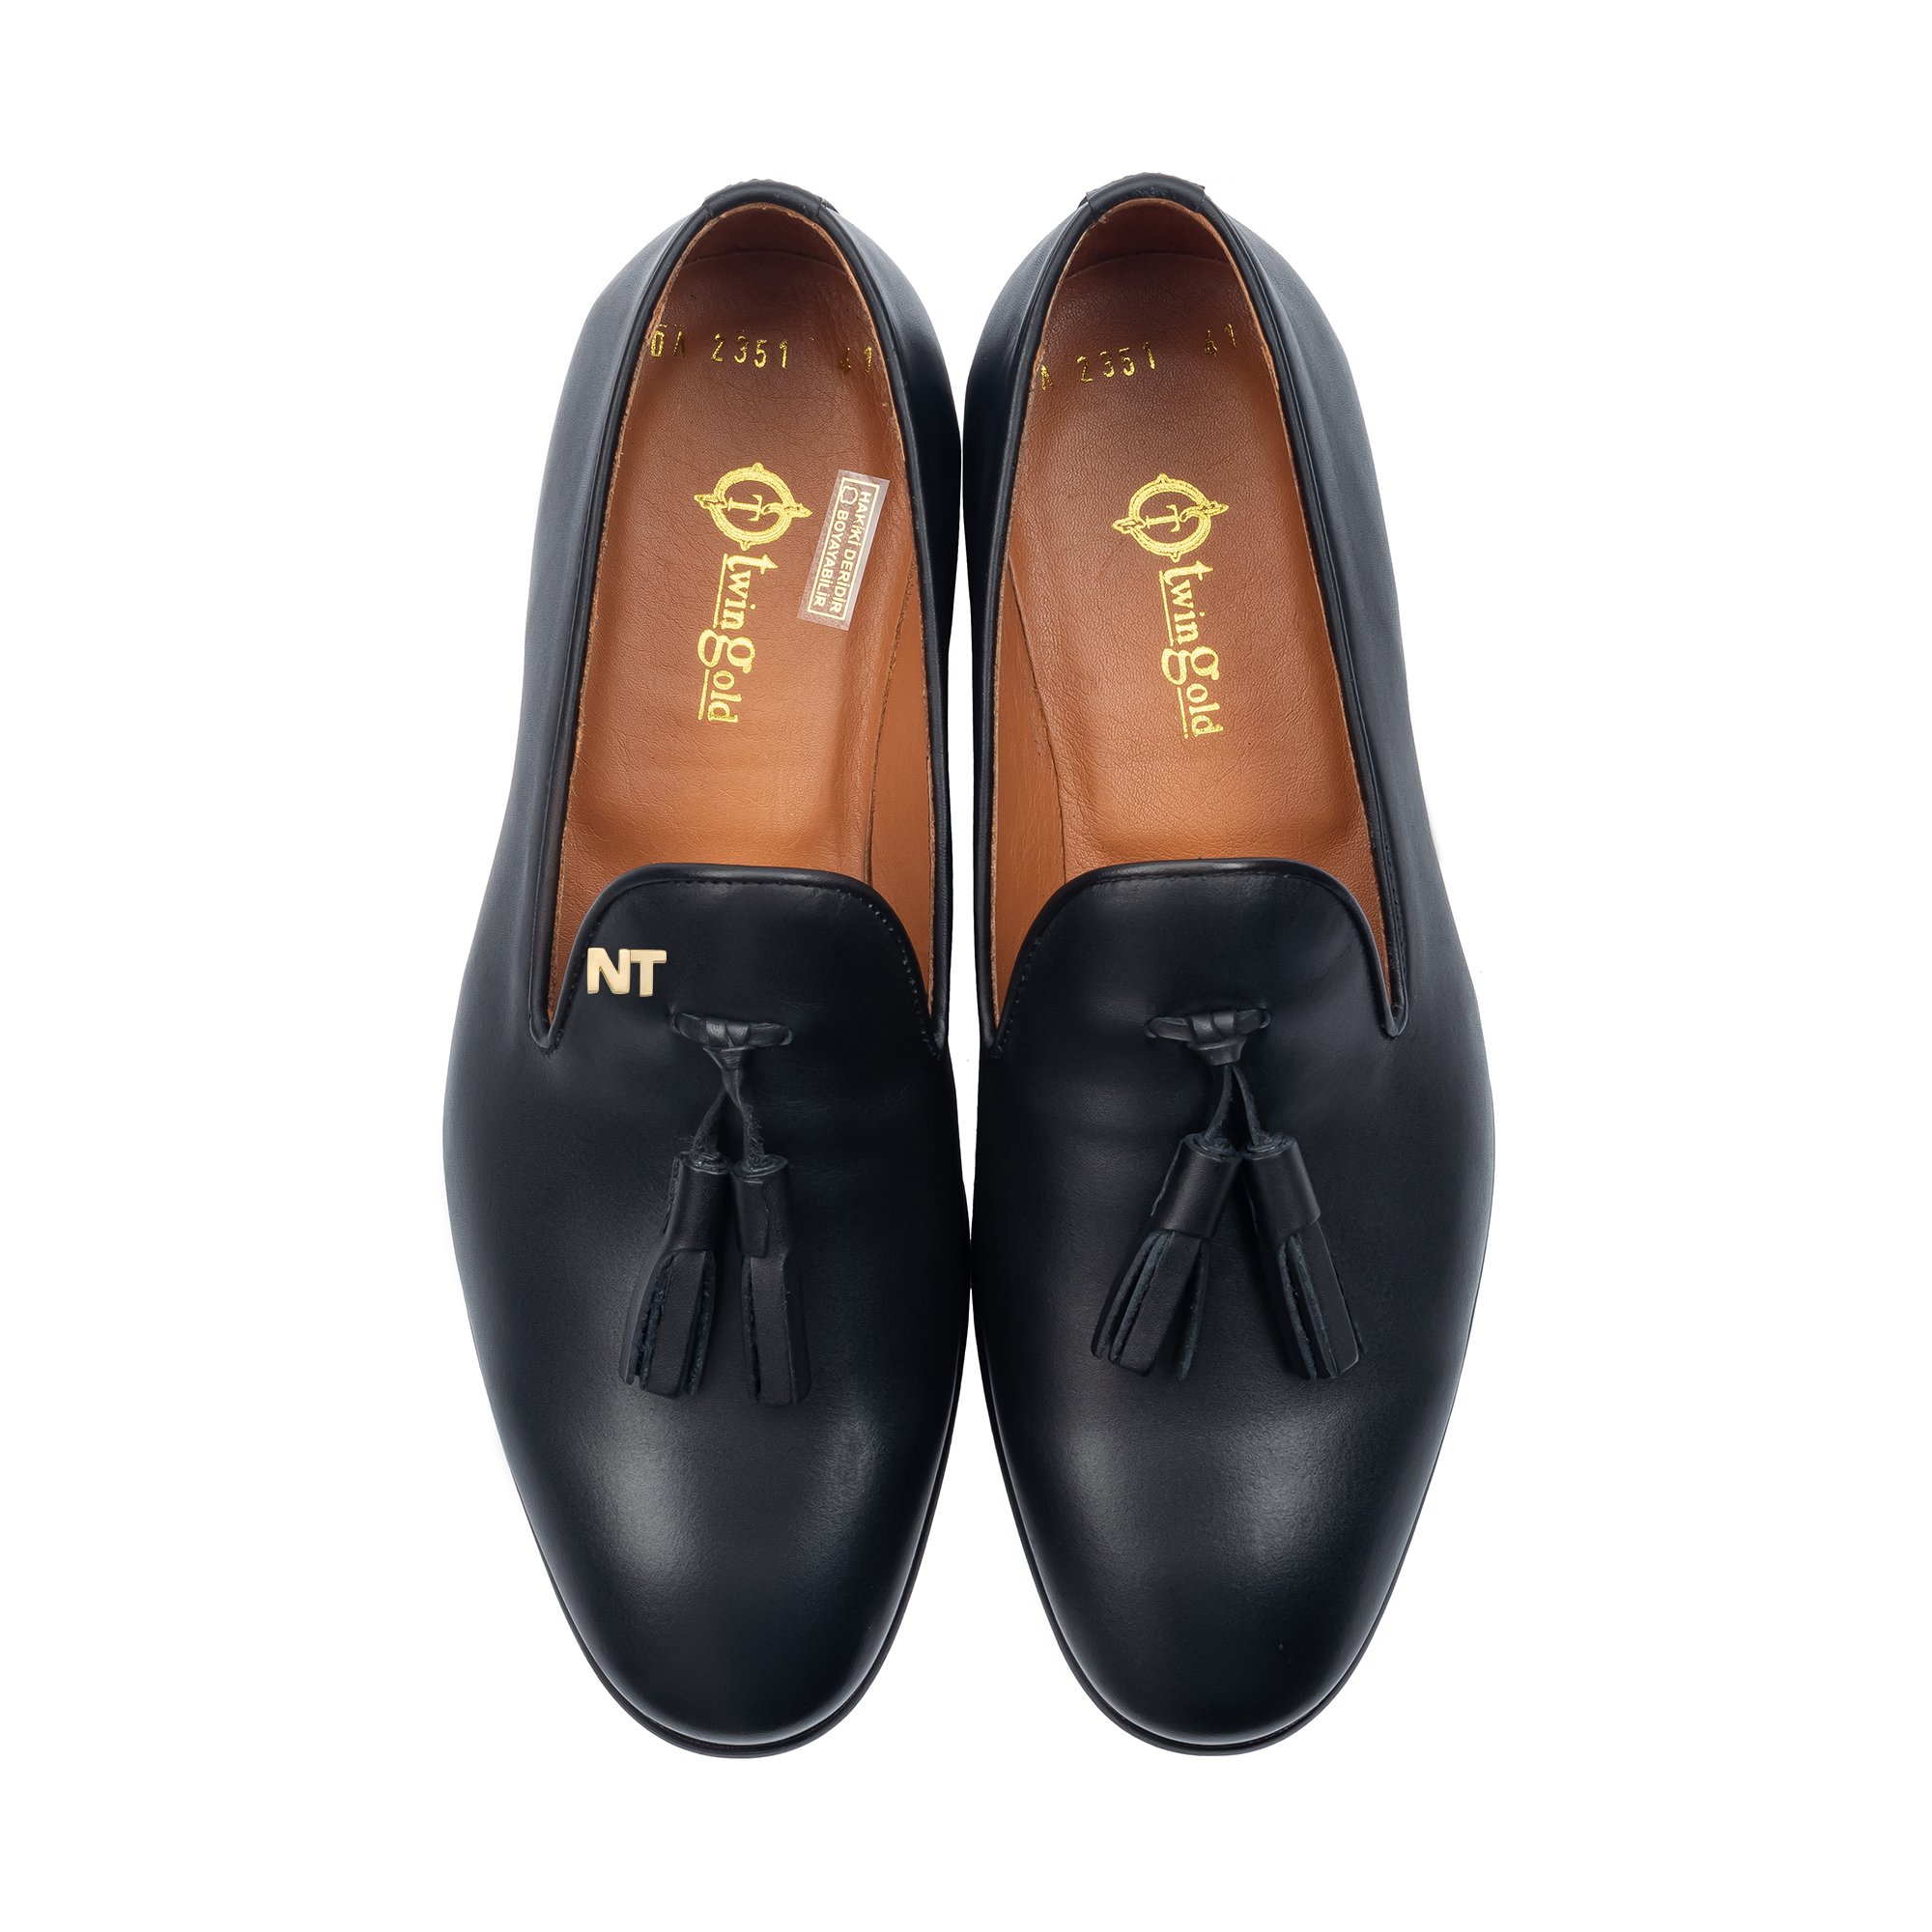 Twingold Kişiye Özel %100 Antik Deri Püsküllü Erkek Ayakkabı - Siyah